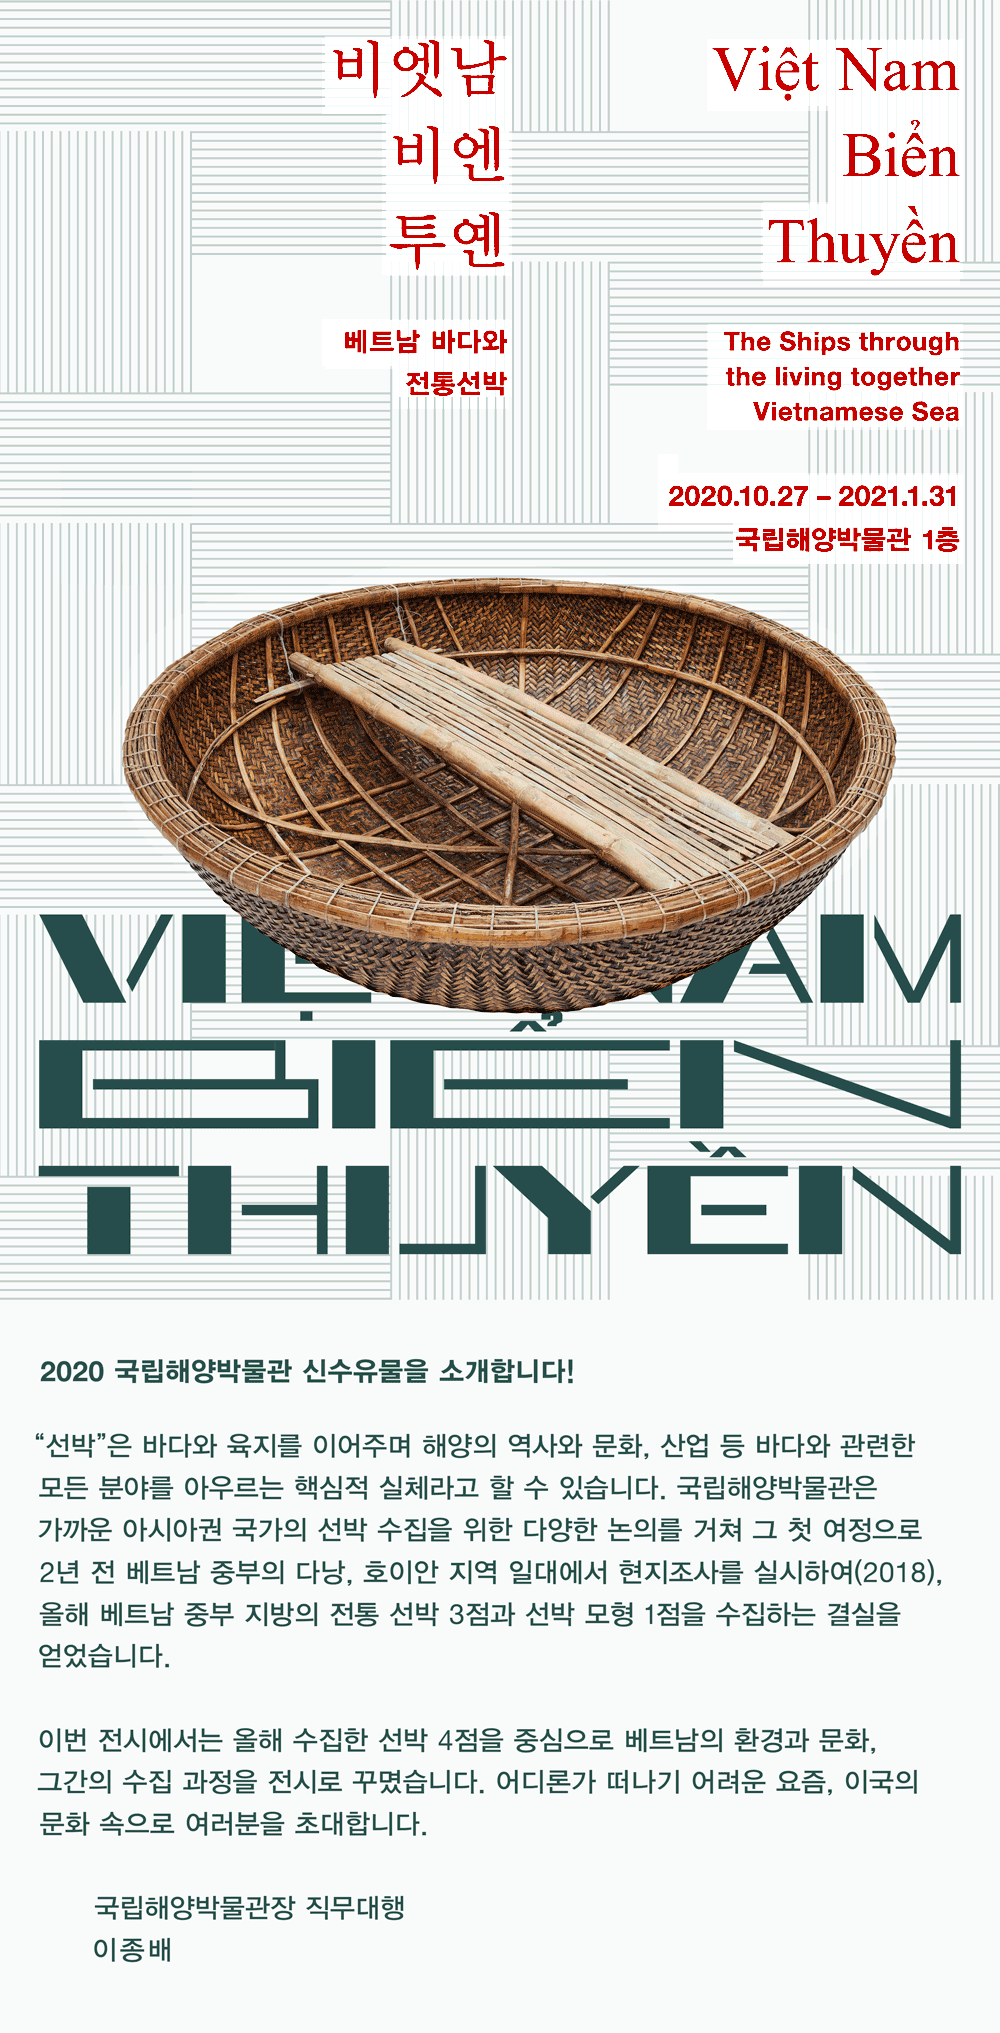 국립해양박물관 비엣남 비엔 투옌: 베트남 바다와 전통 선박 포스터. 전시일정은 2020년 10월 27일부터 2021년 1월 31일까지 국립해양박물관 1층에서 진행됩니다. 자세한 내용은 아래에 이어집니다.